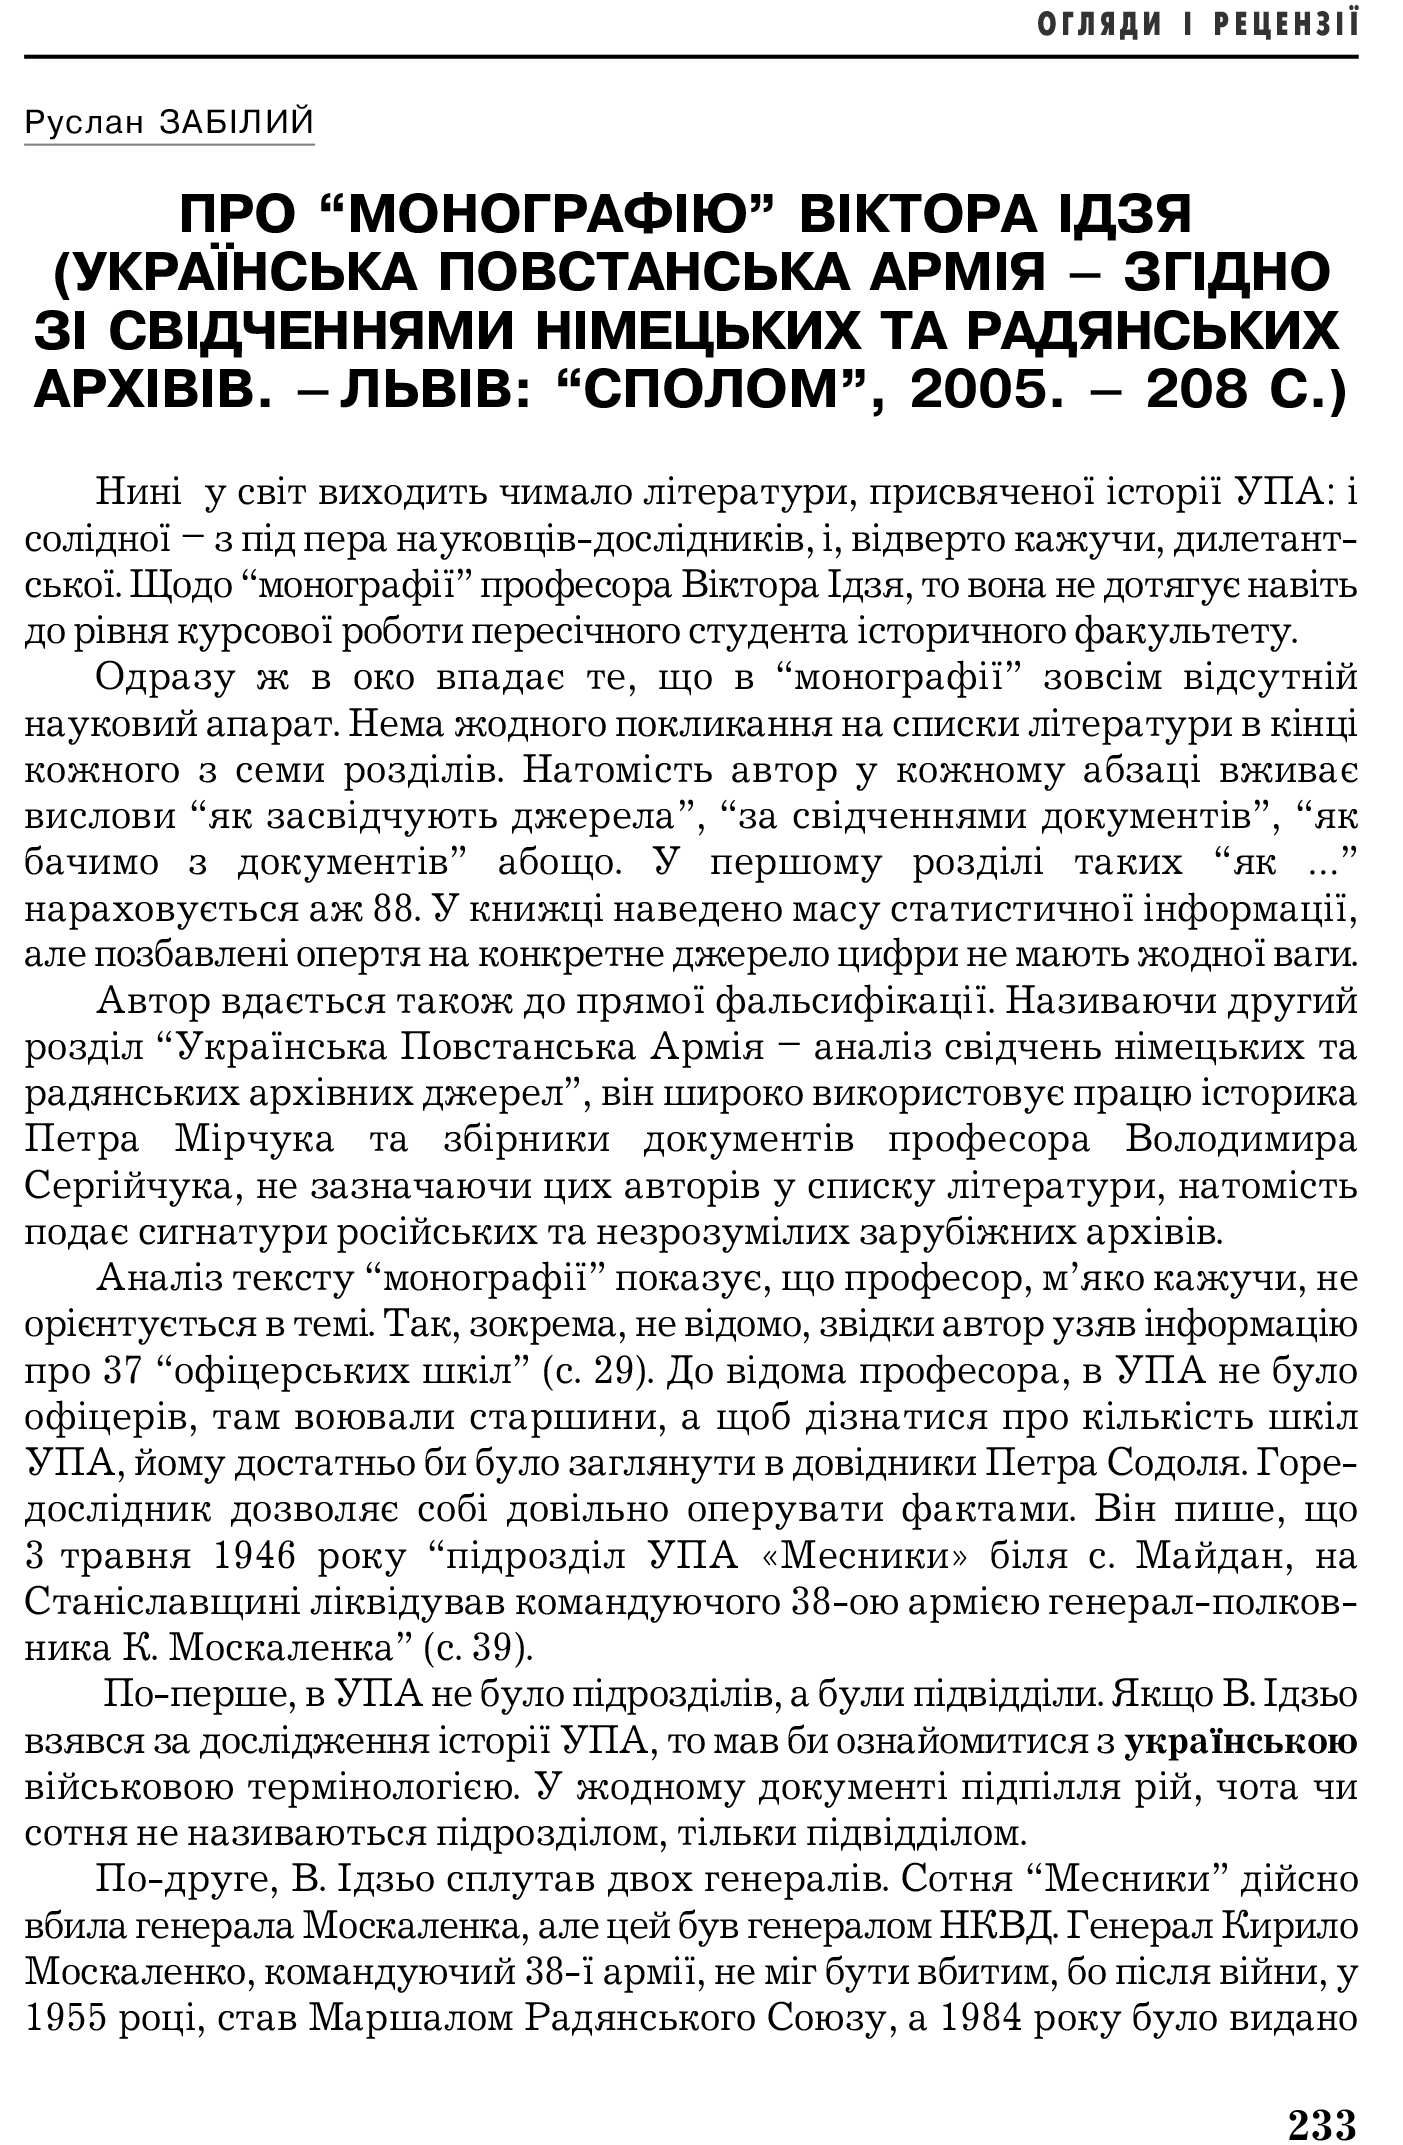 Український визвольний рух №5, ст. 233 - 234